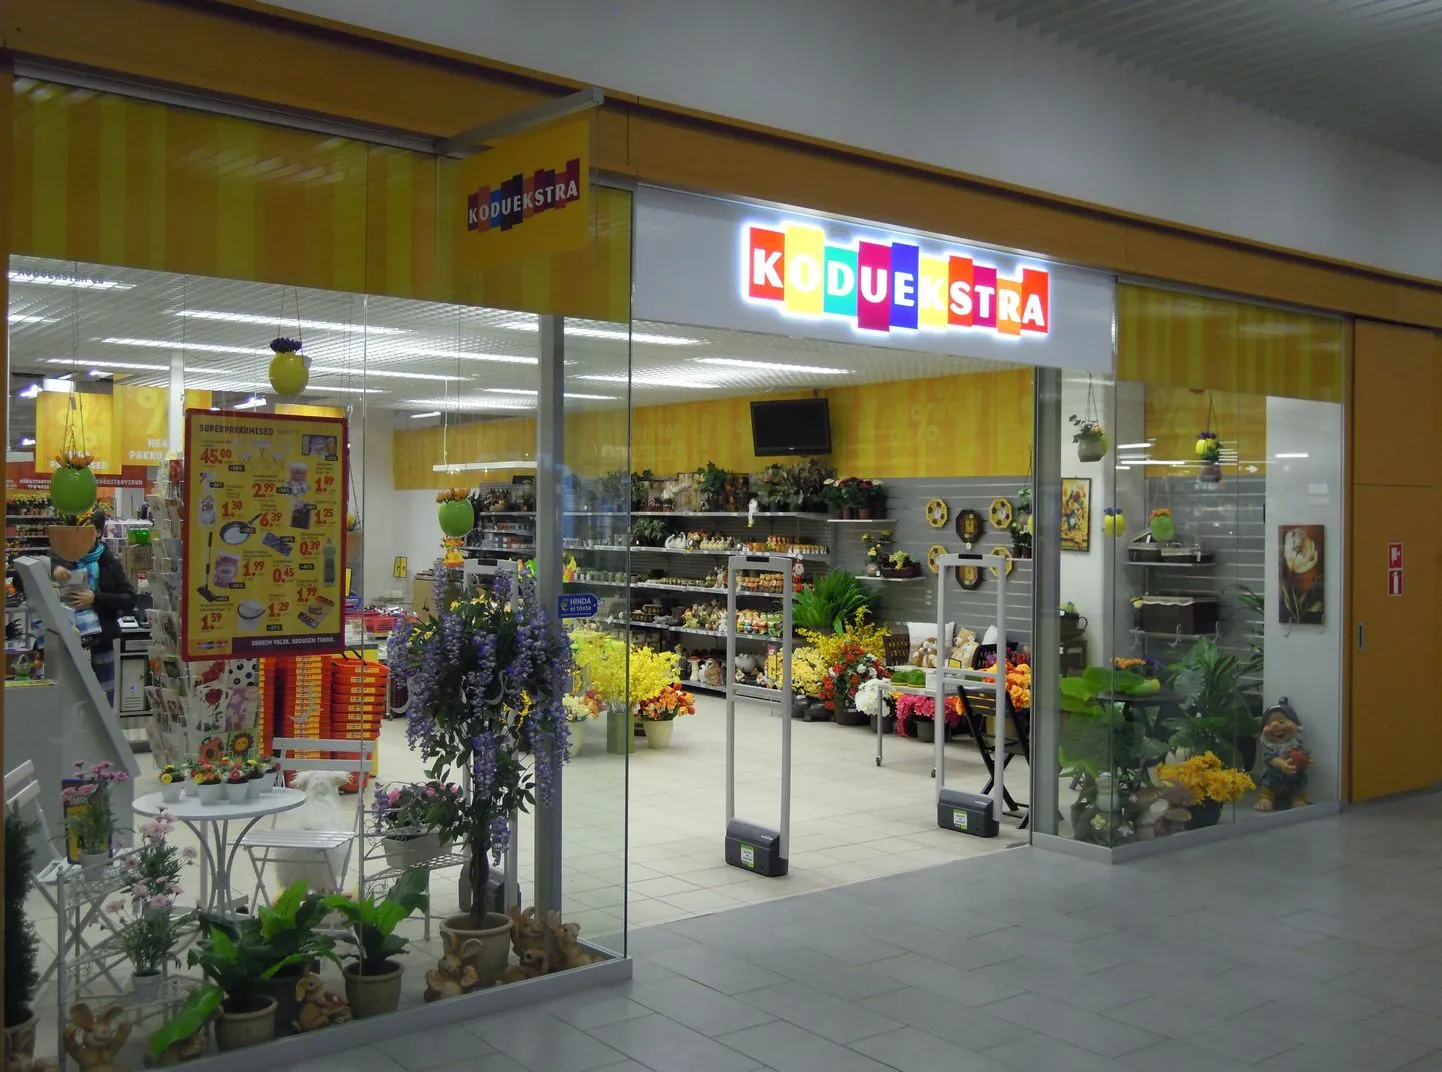 Сеть Koduekstra сообщила о закрытии своего магазина в Хаапсалу в конце 2023 года.